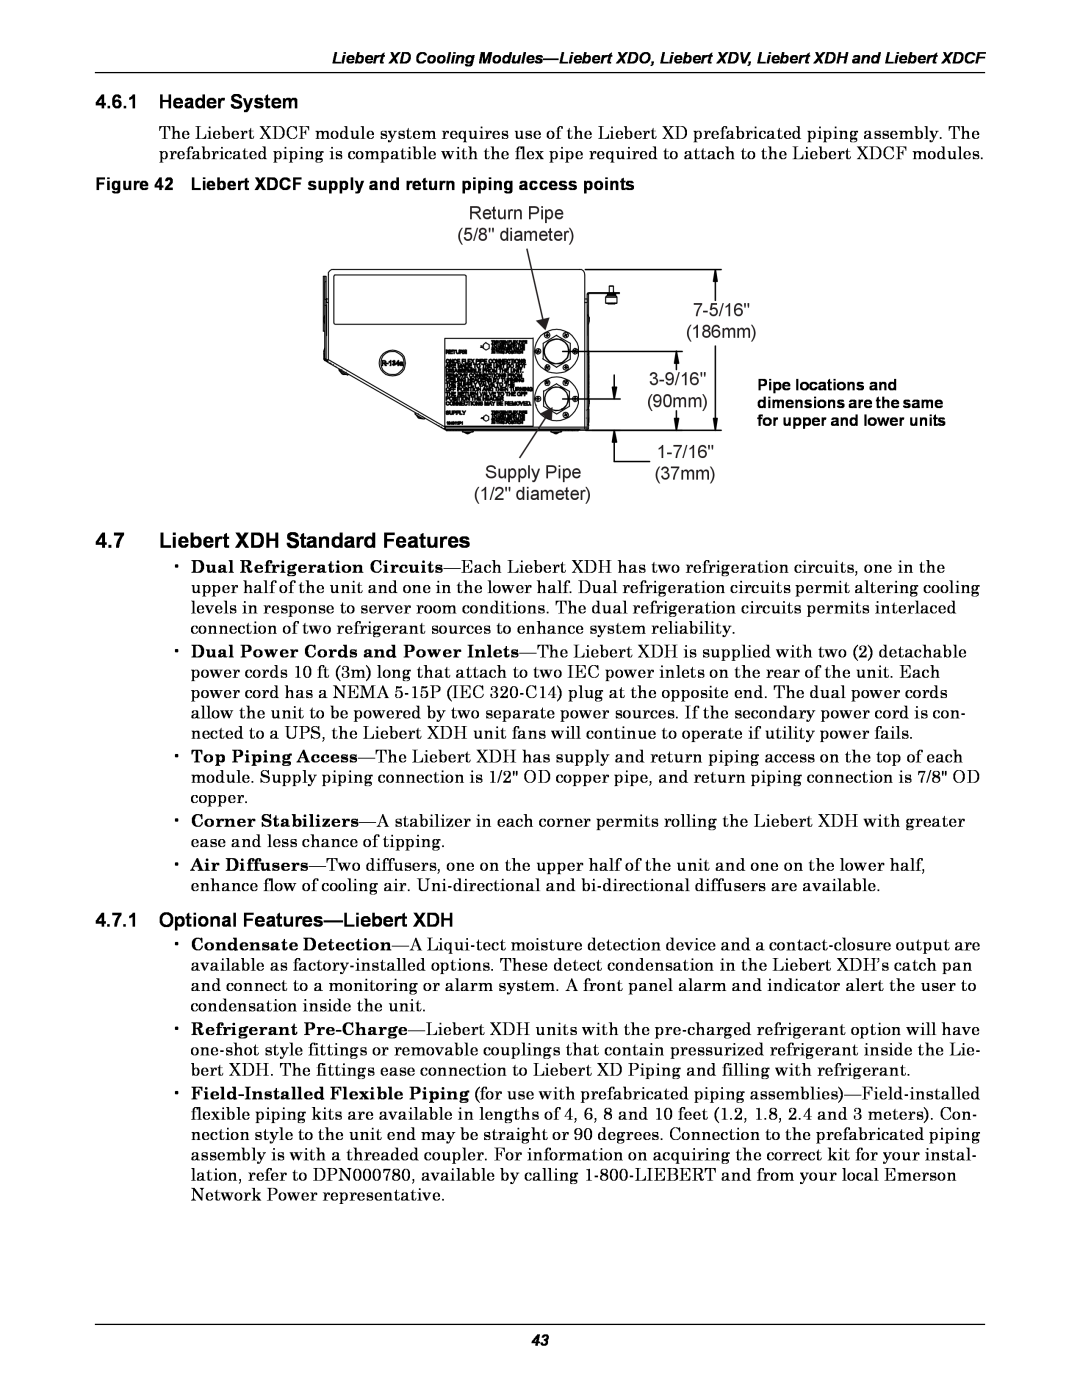 Emerson Xtreme Density manual Liebert XDH Standard Features, Header System, Optional Features-Liebert XDH 